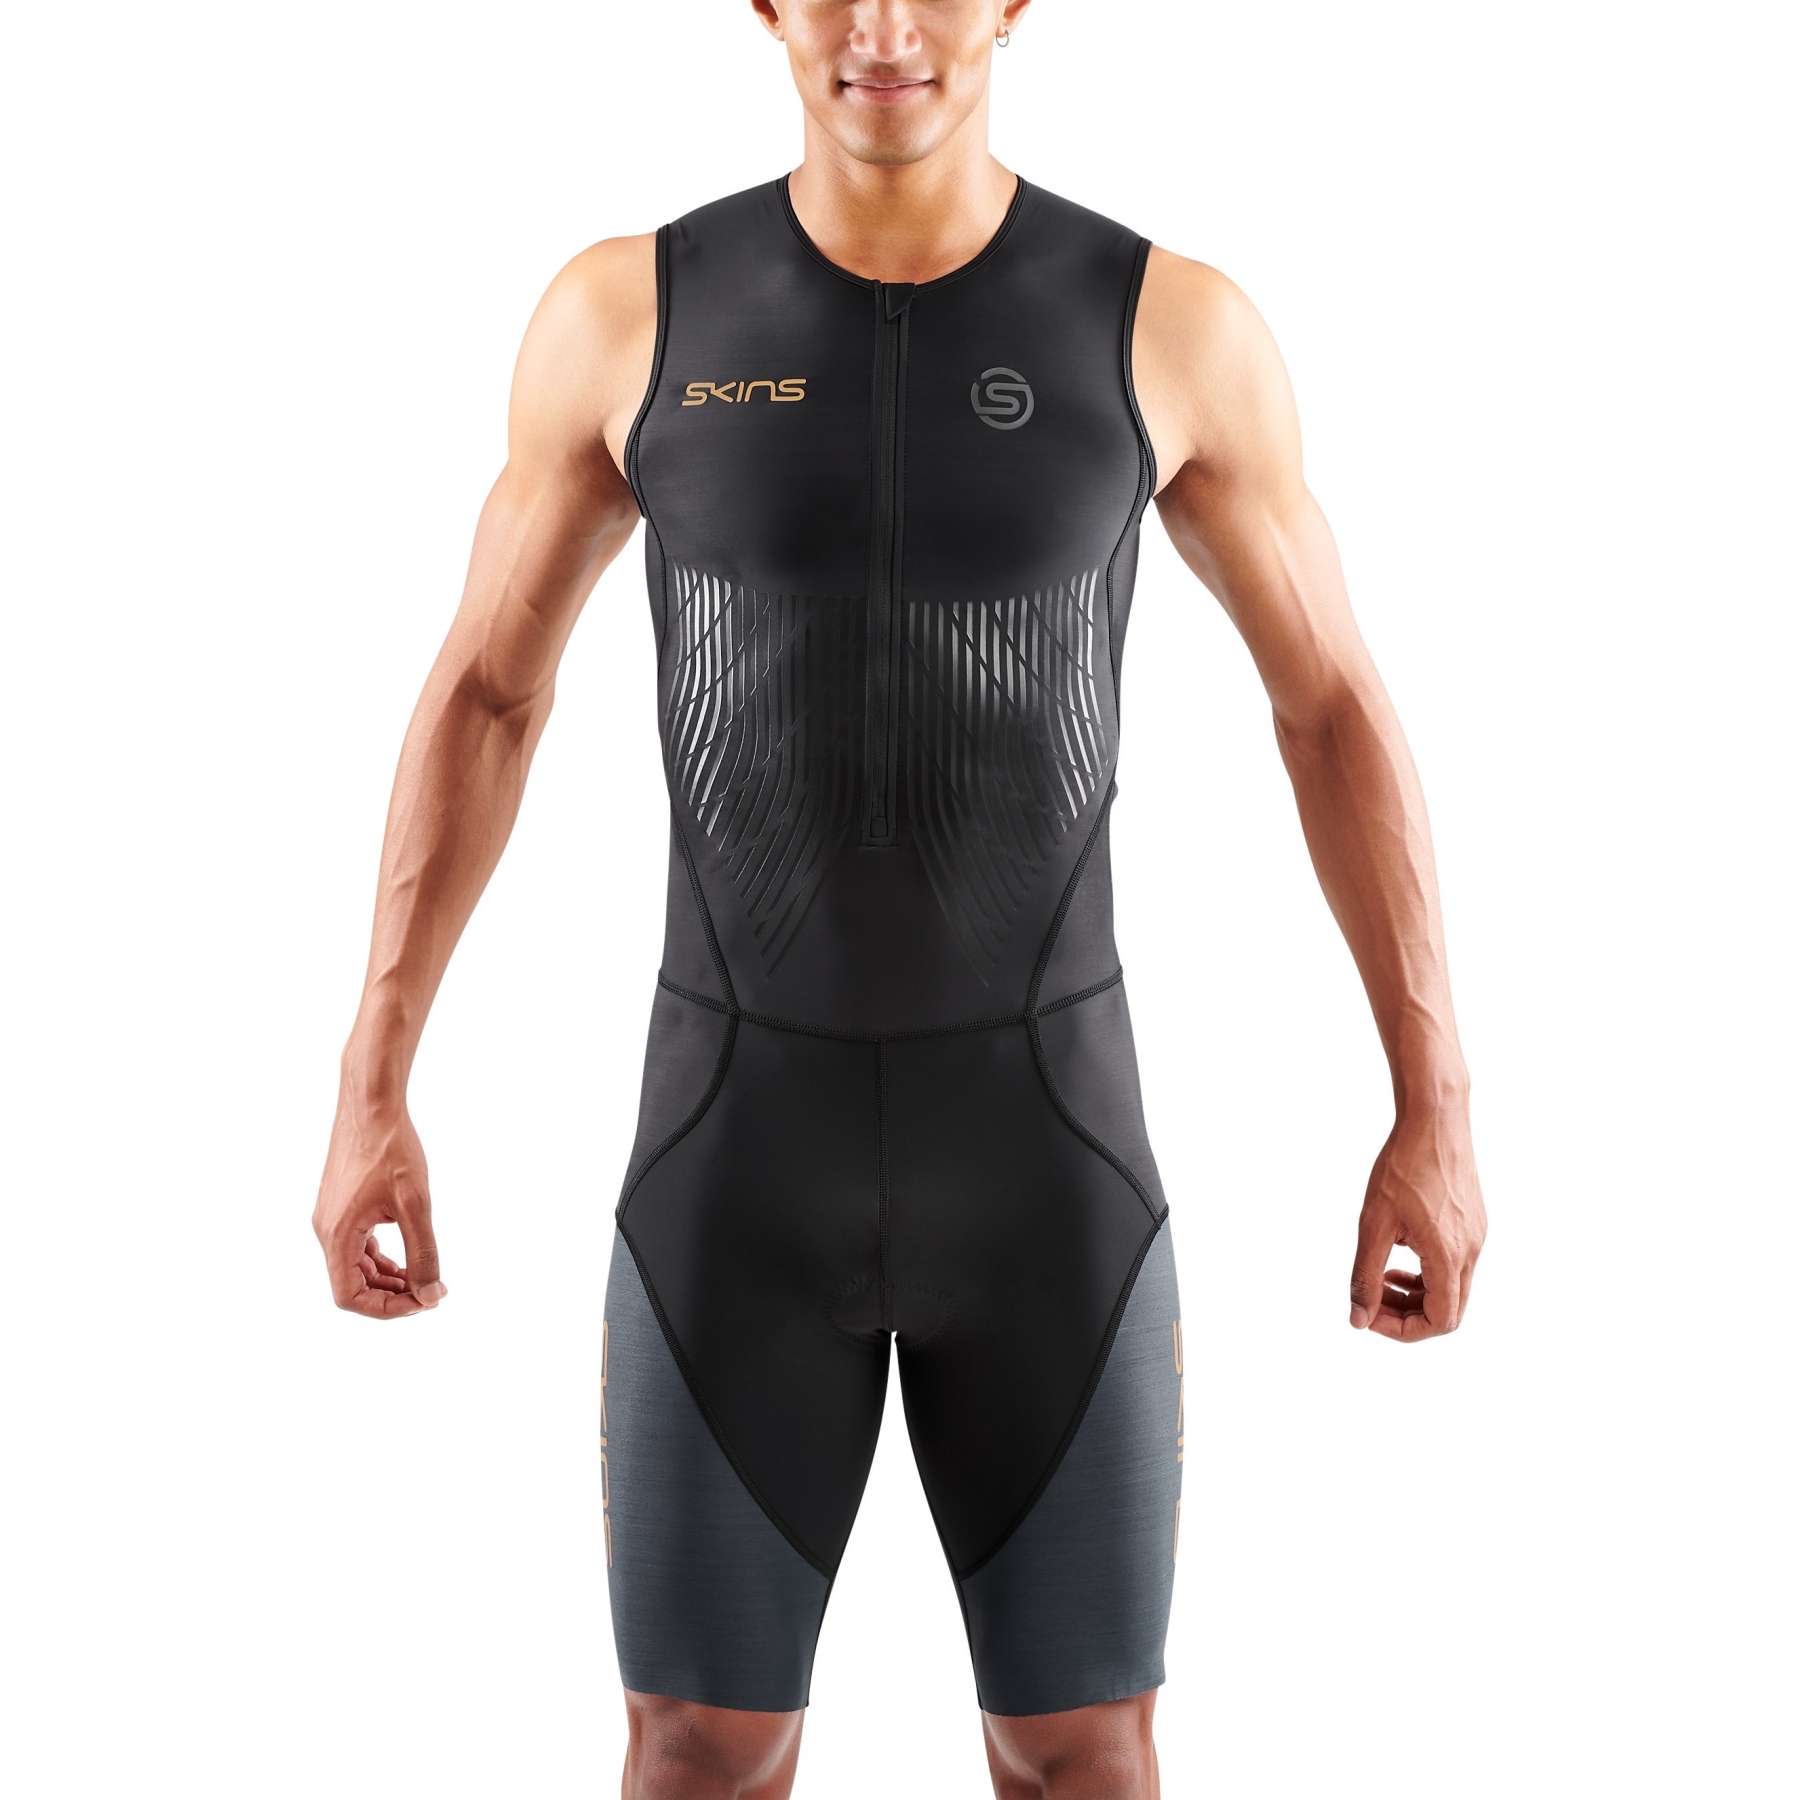 Produktbild von SKINS TRI Elite Ärmelloser Triathlonanzug - Black/Carbon